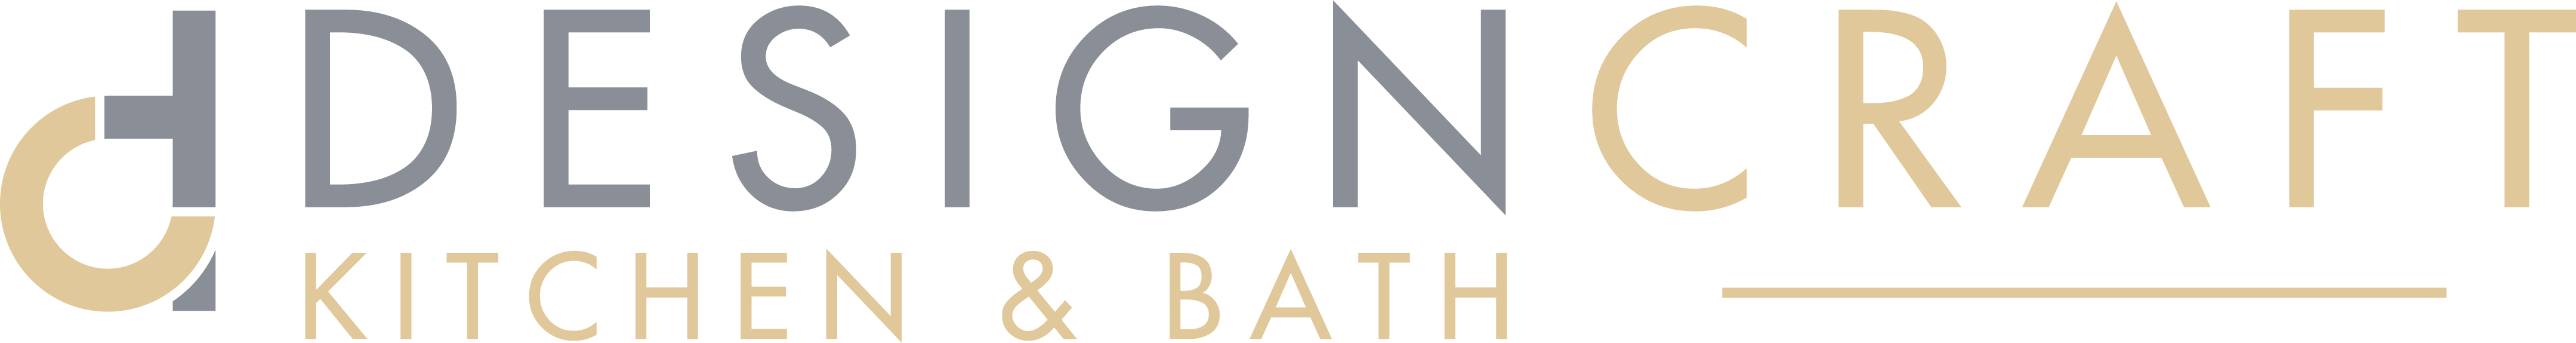 DesignCraft Kitchen & Bath Co. Logo